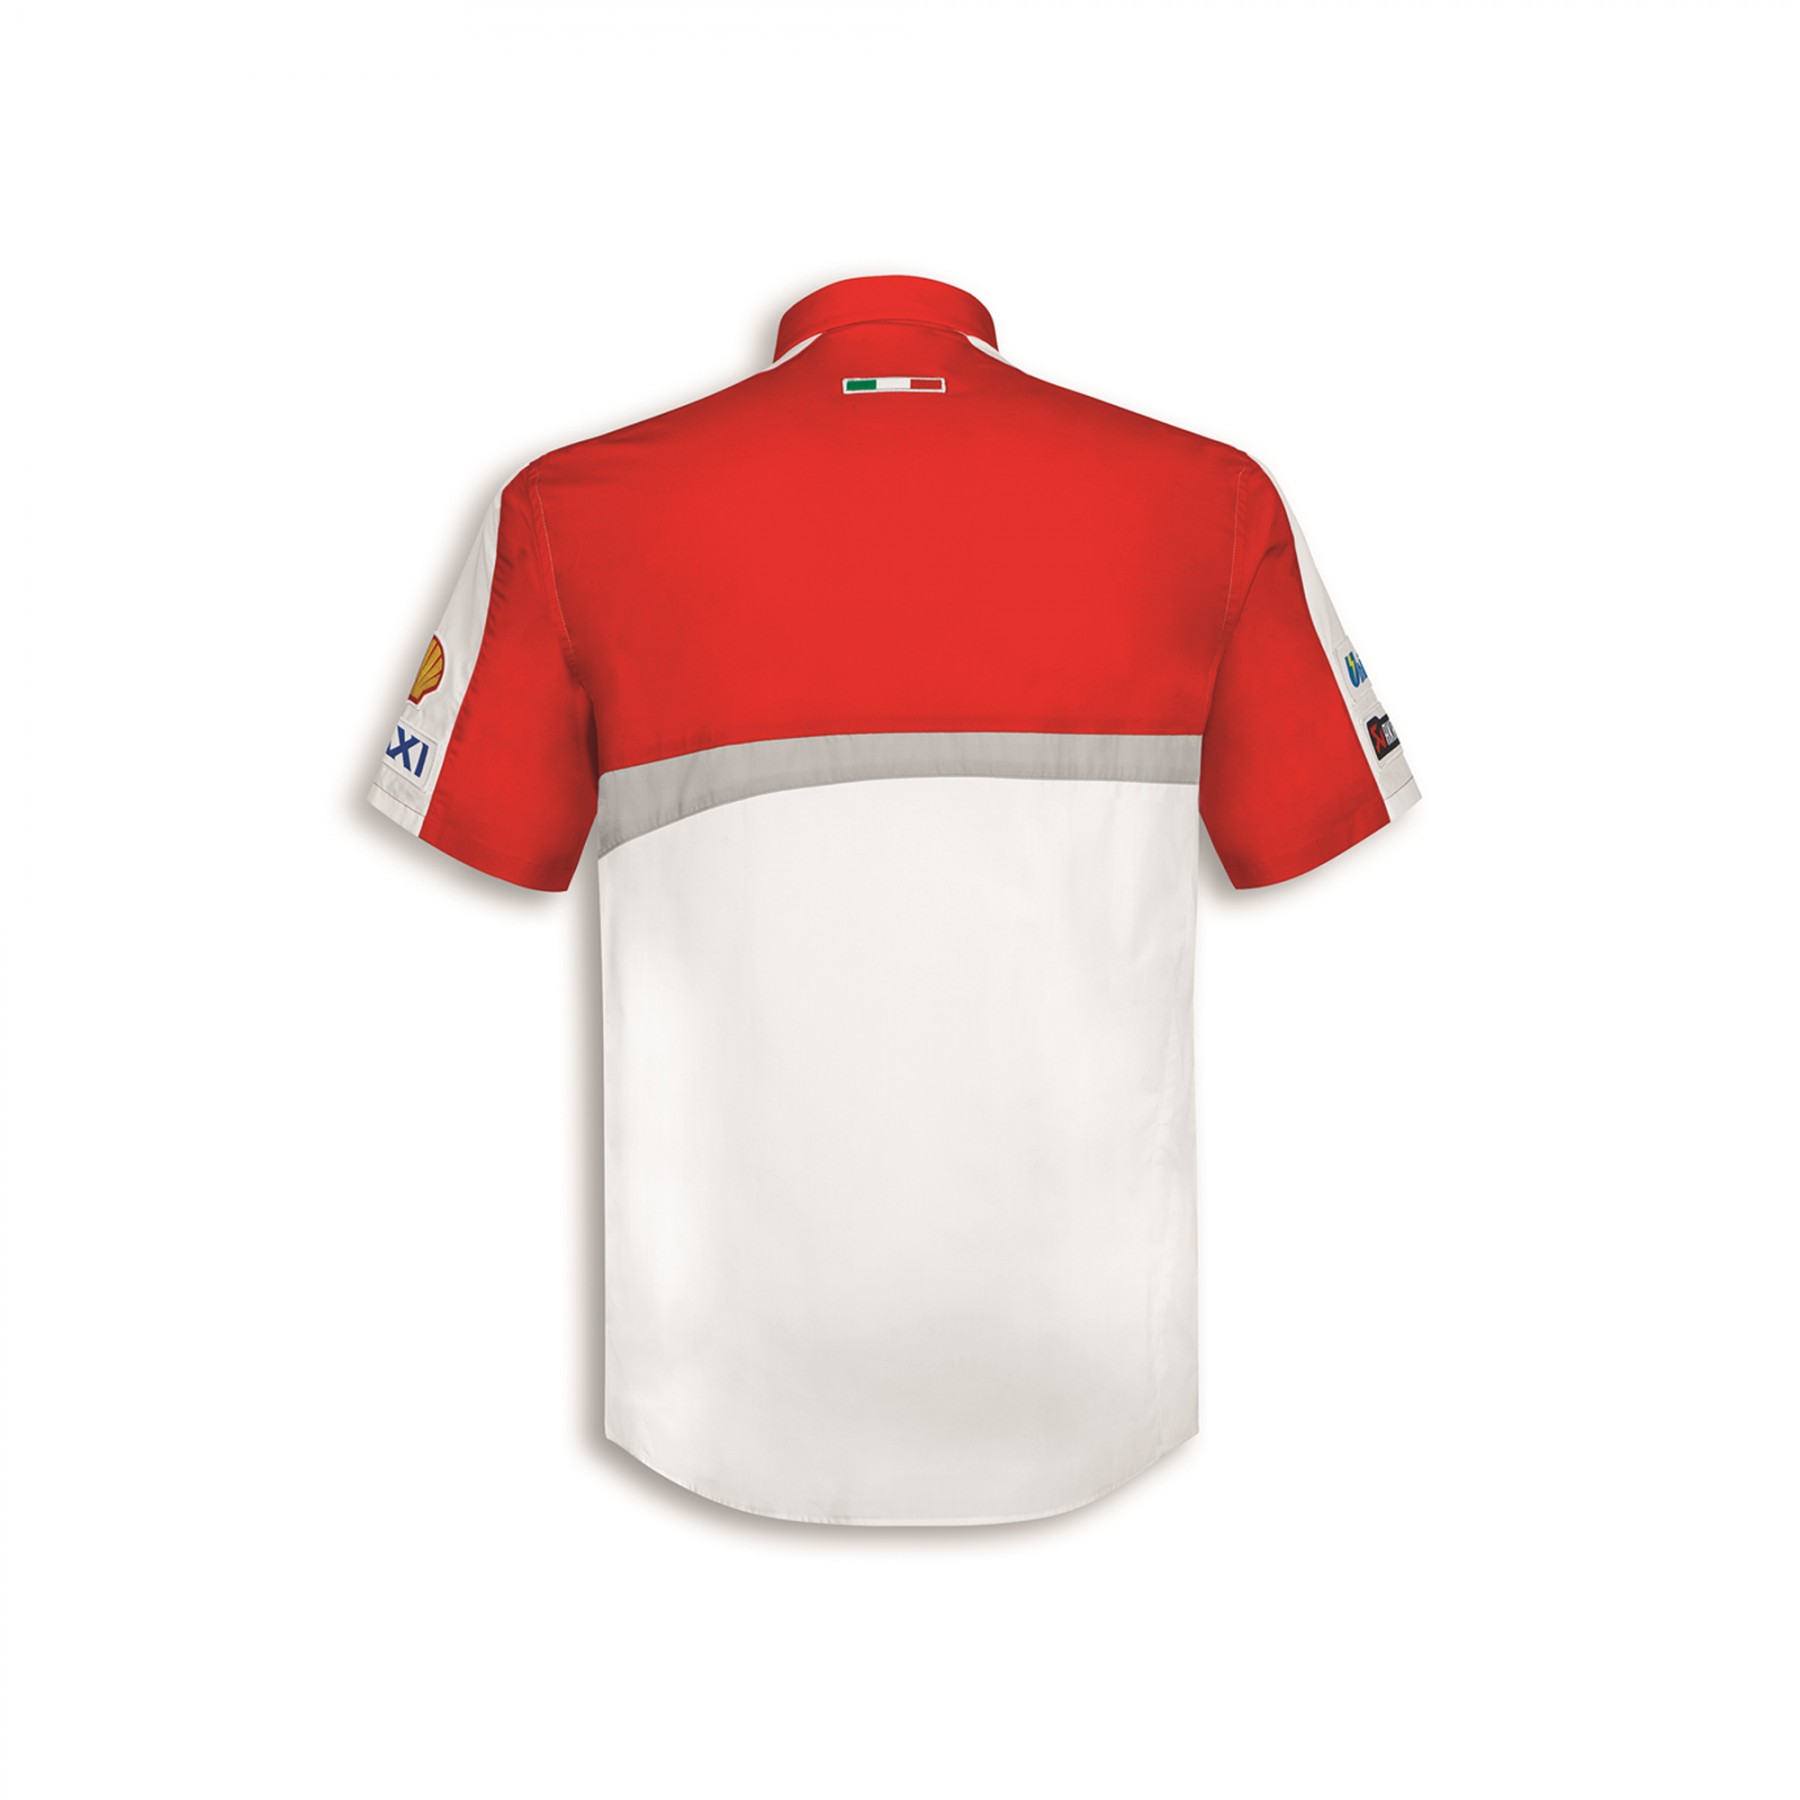 Ducati corse Speed polo t-shirt manga corta rojo nuevo! 